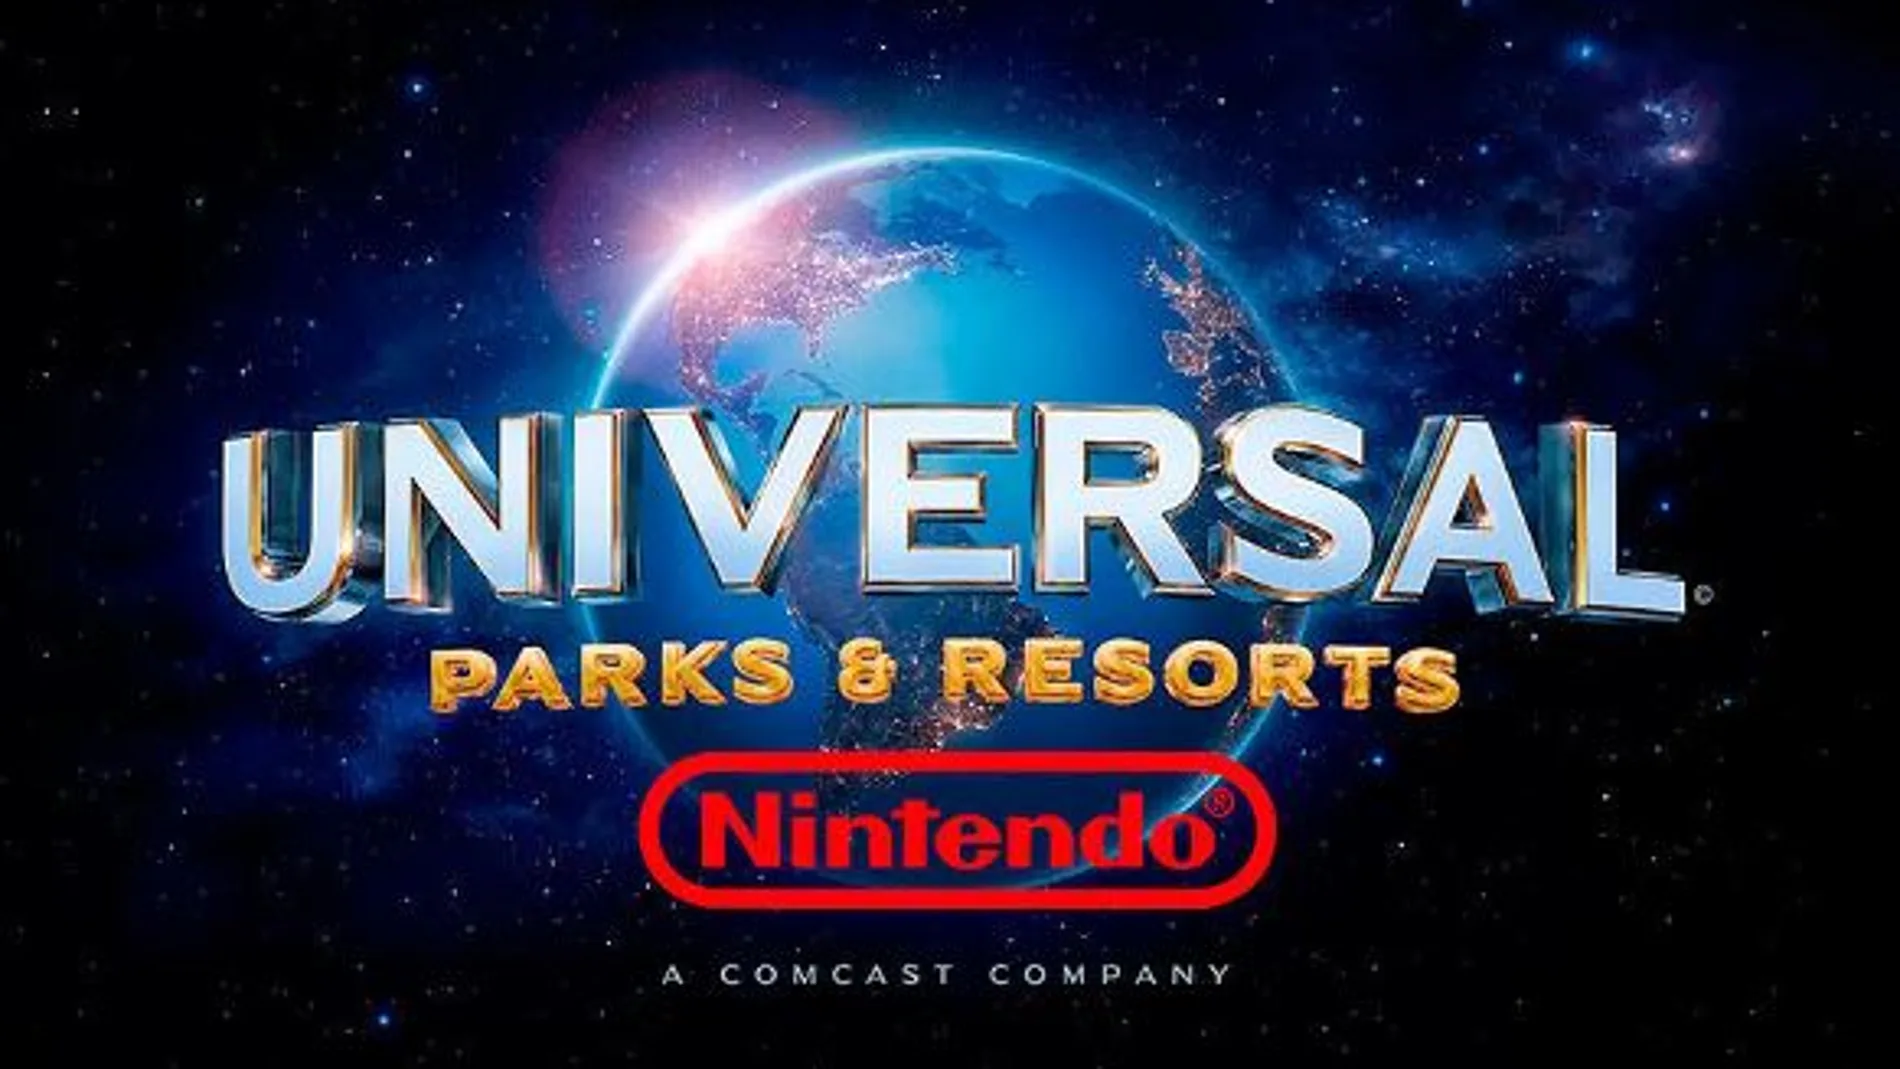 Nintendo continúa firme en su apuesta por los Parques de Atracciones